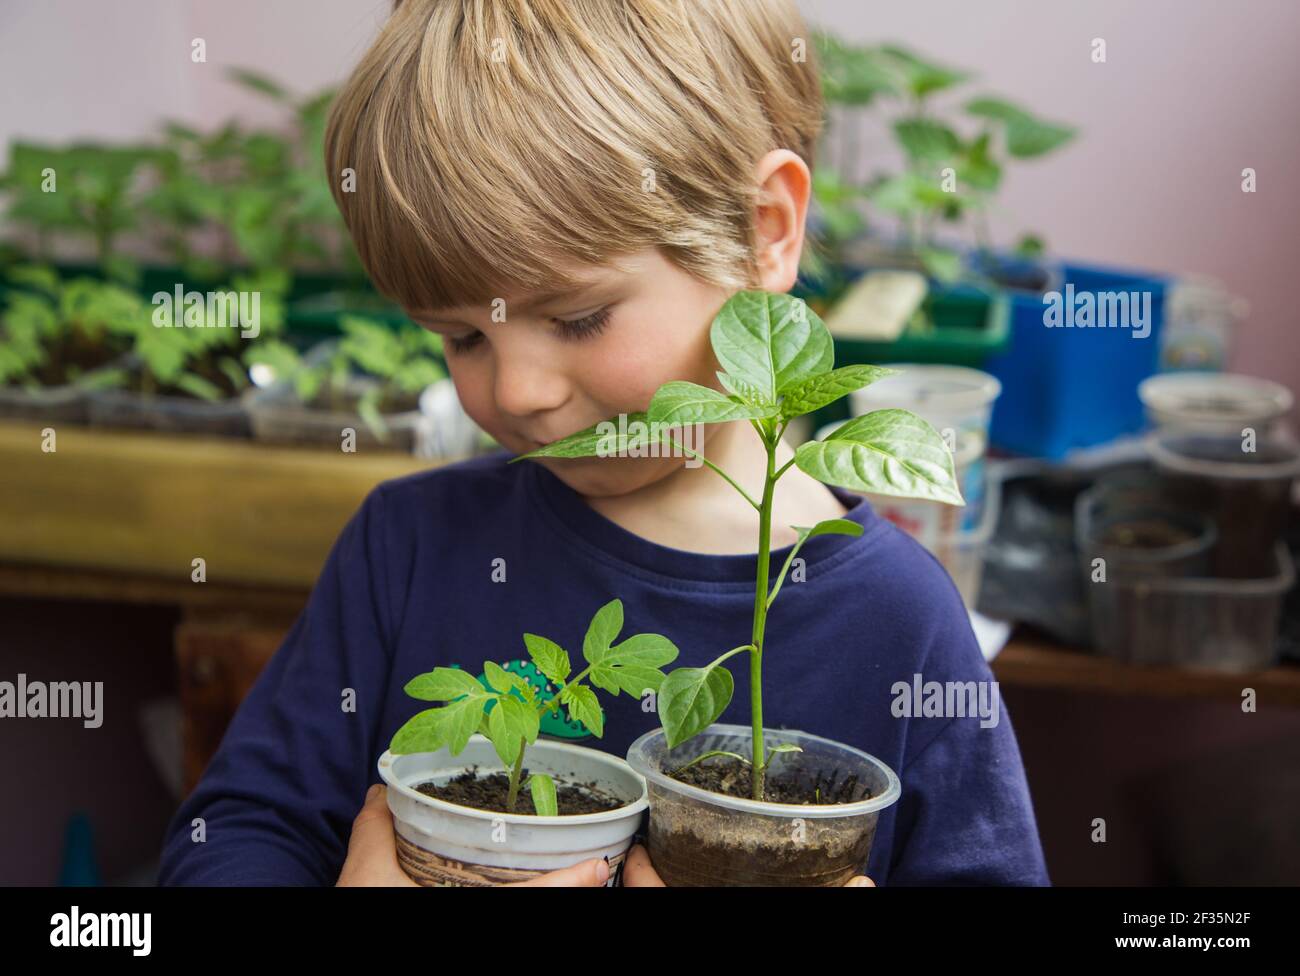 Kleiner Junge hält Sämlinge von Pfeffer und Tomate in Plastiktöpfen. Kleiner Assistent - Gärtner. Pflanzlinge wachsen. Pflanzzeit im Garten. Öko-Bildung Stockfoto